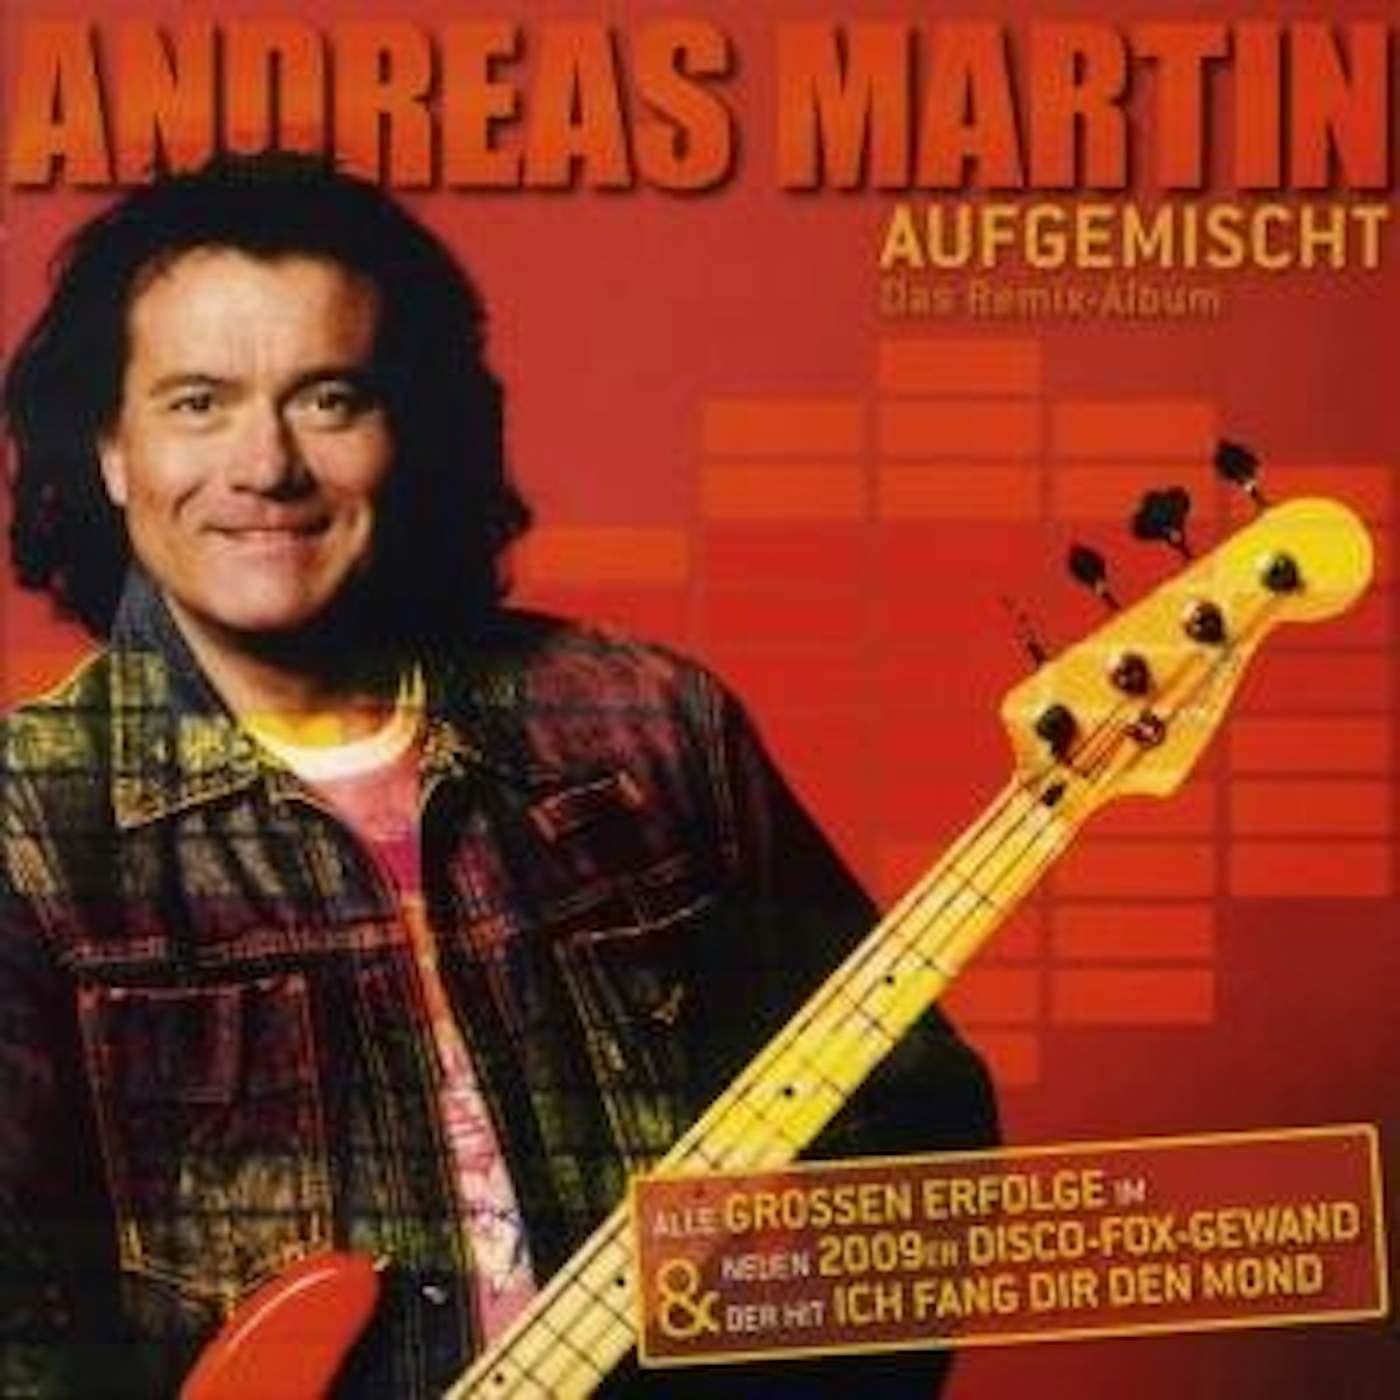 Andreas Martin AUFGEMISCHT: DAS REMIX ALBUM CD